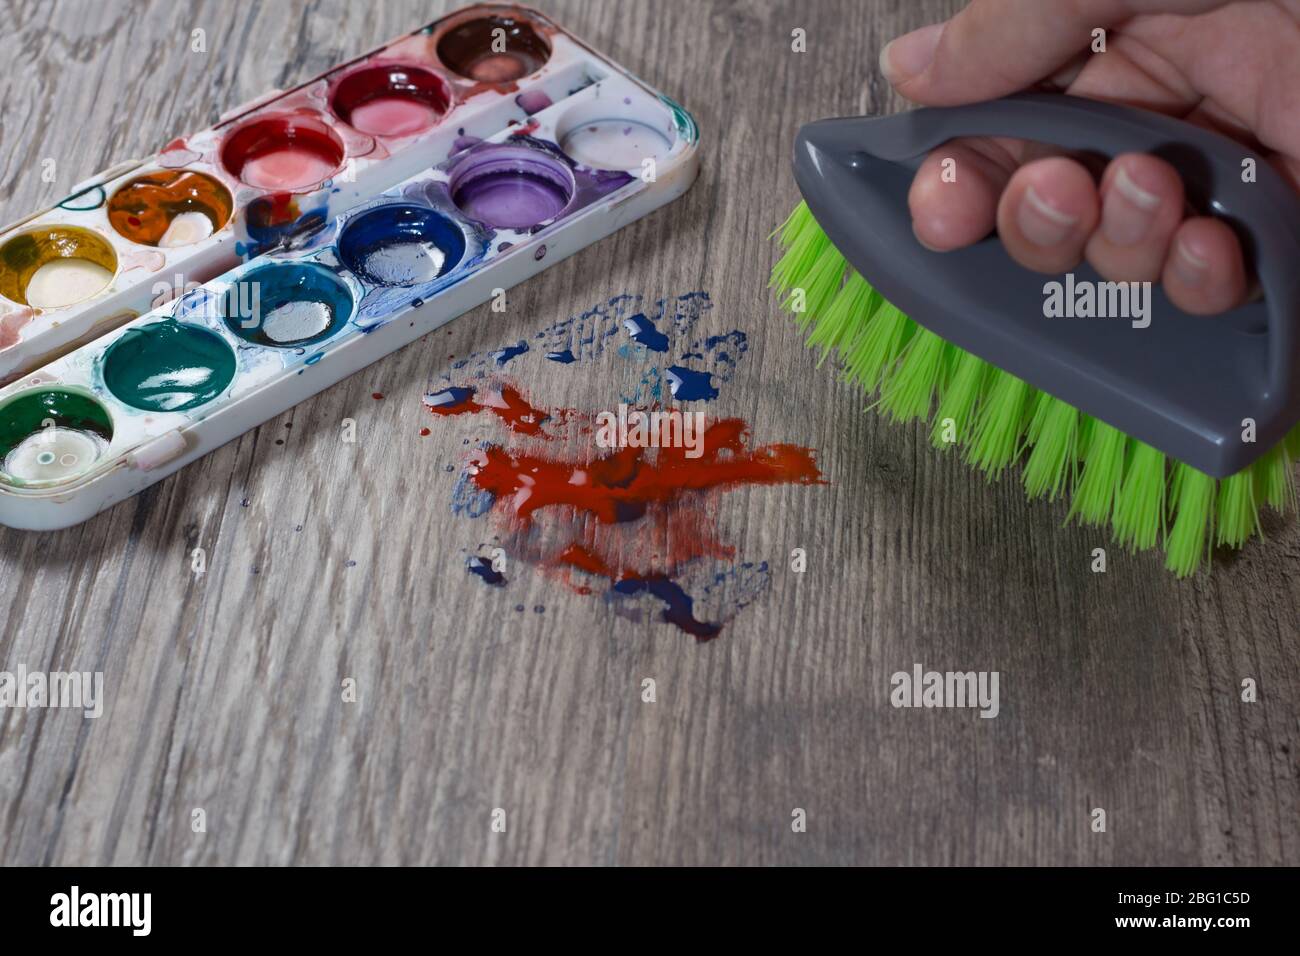 Pulire la vernice immagini e fotografie stock ad alta risoluzione - Alamy